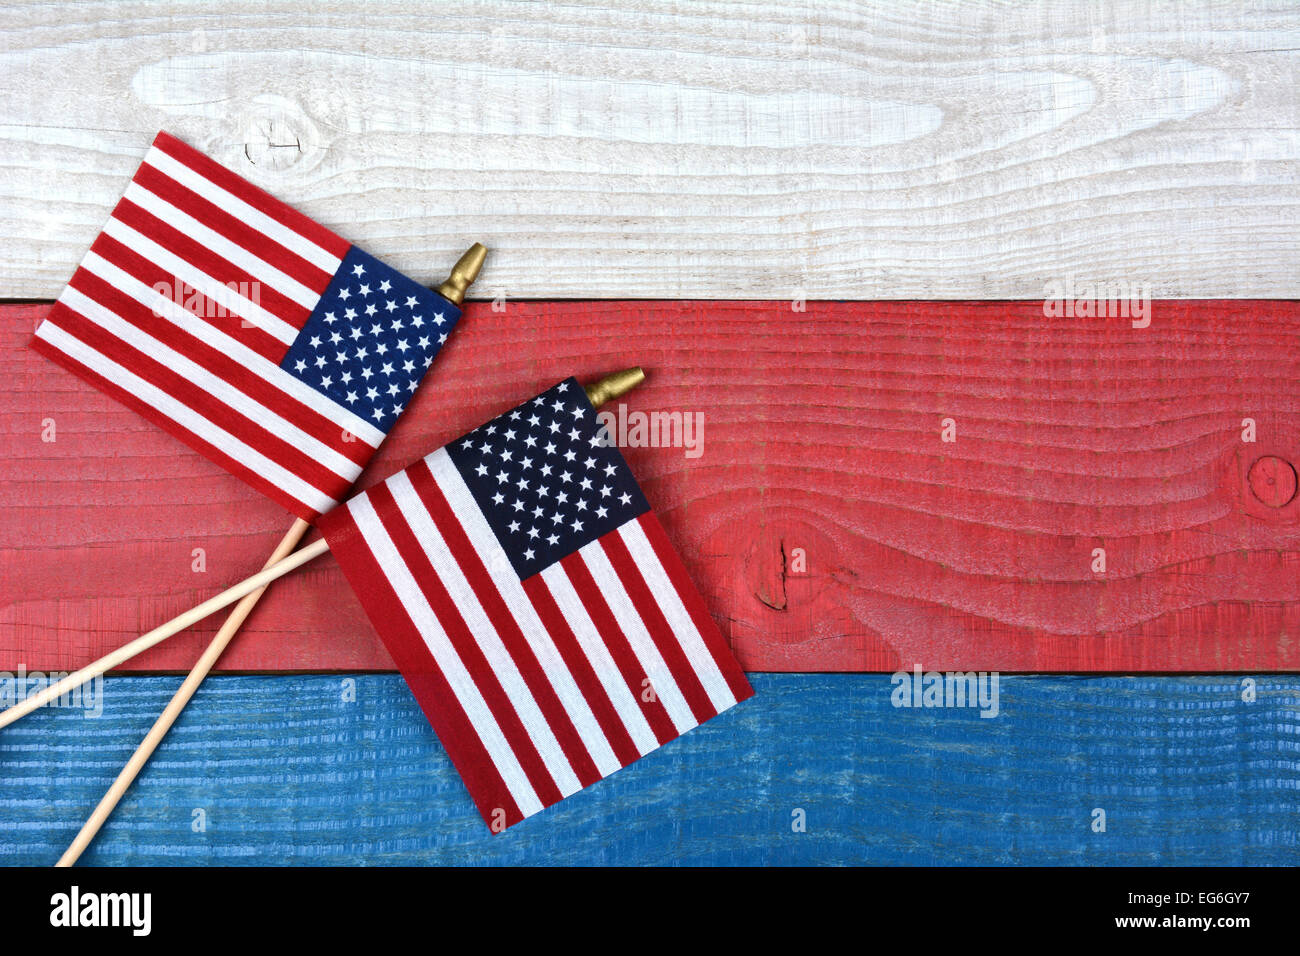 High angle shot croisé de deux drapeaux américains sur un fond rouge, blanc et bleu table de pique-nique. Format horizontal avec l'exemplaire de l'espace. Banque D'Images